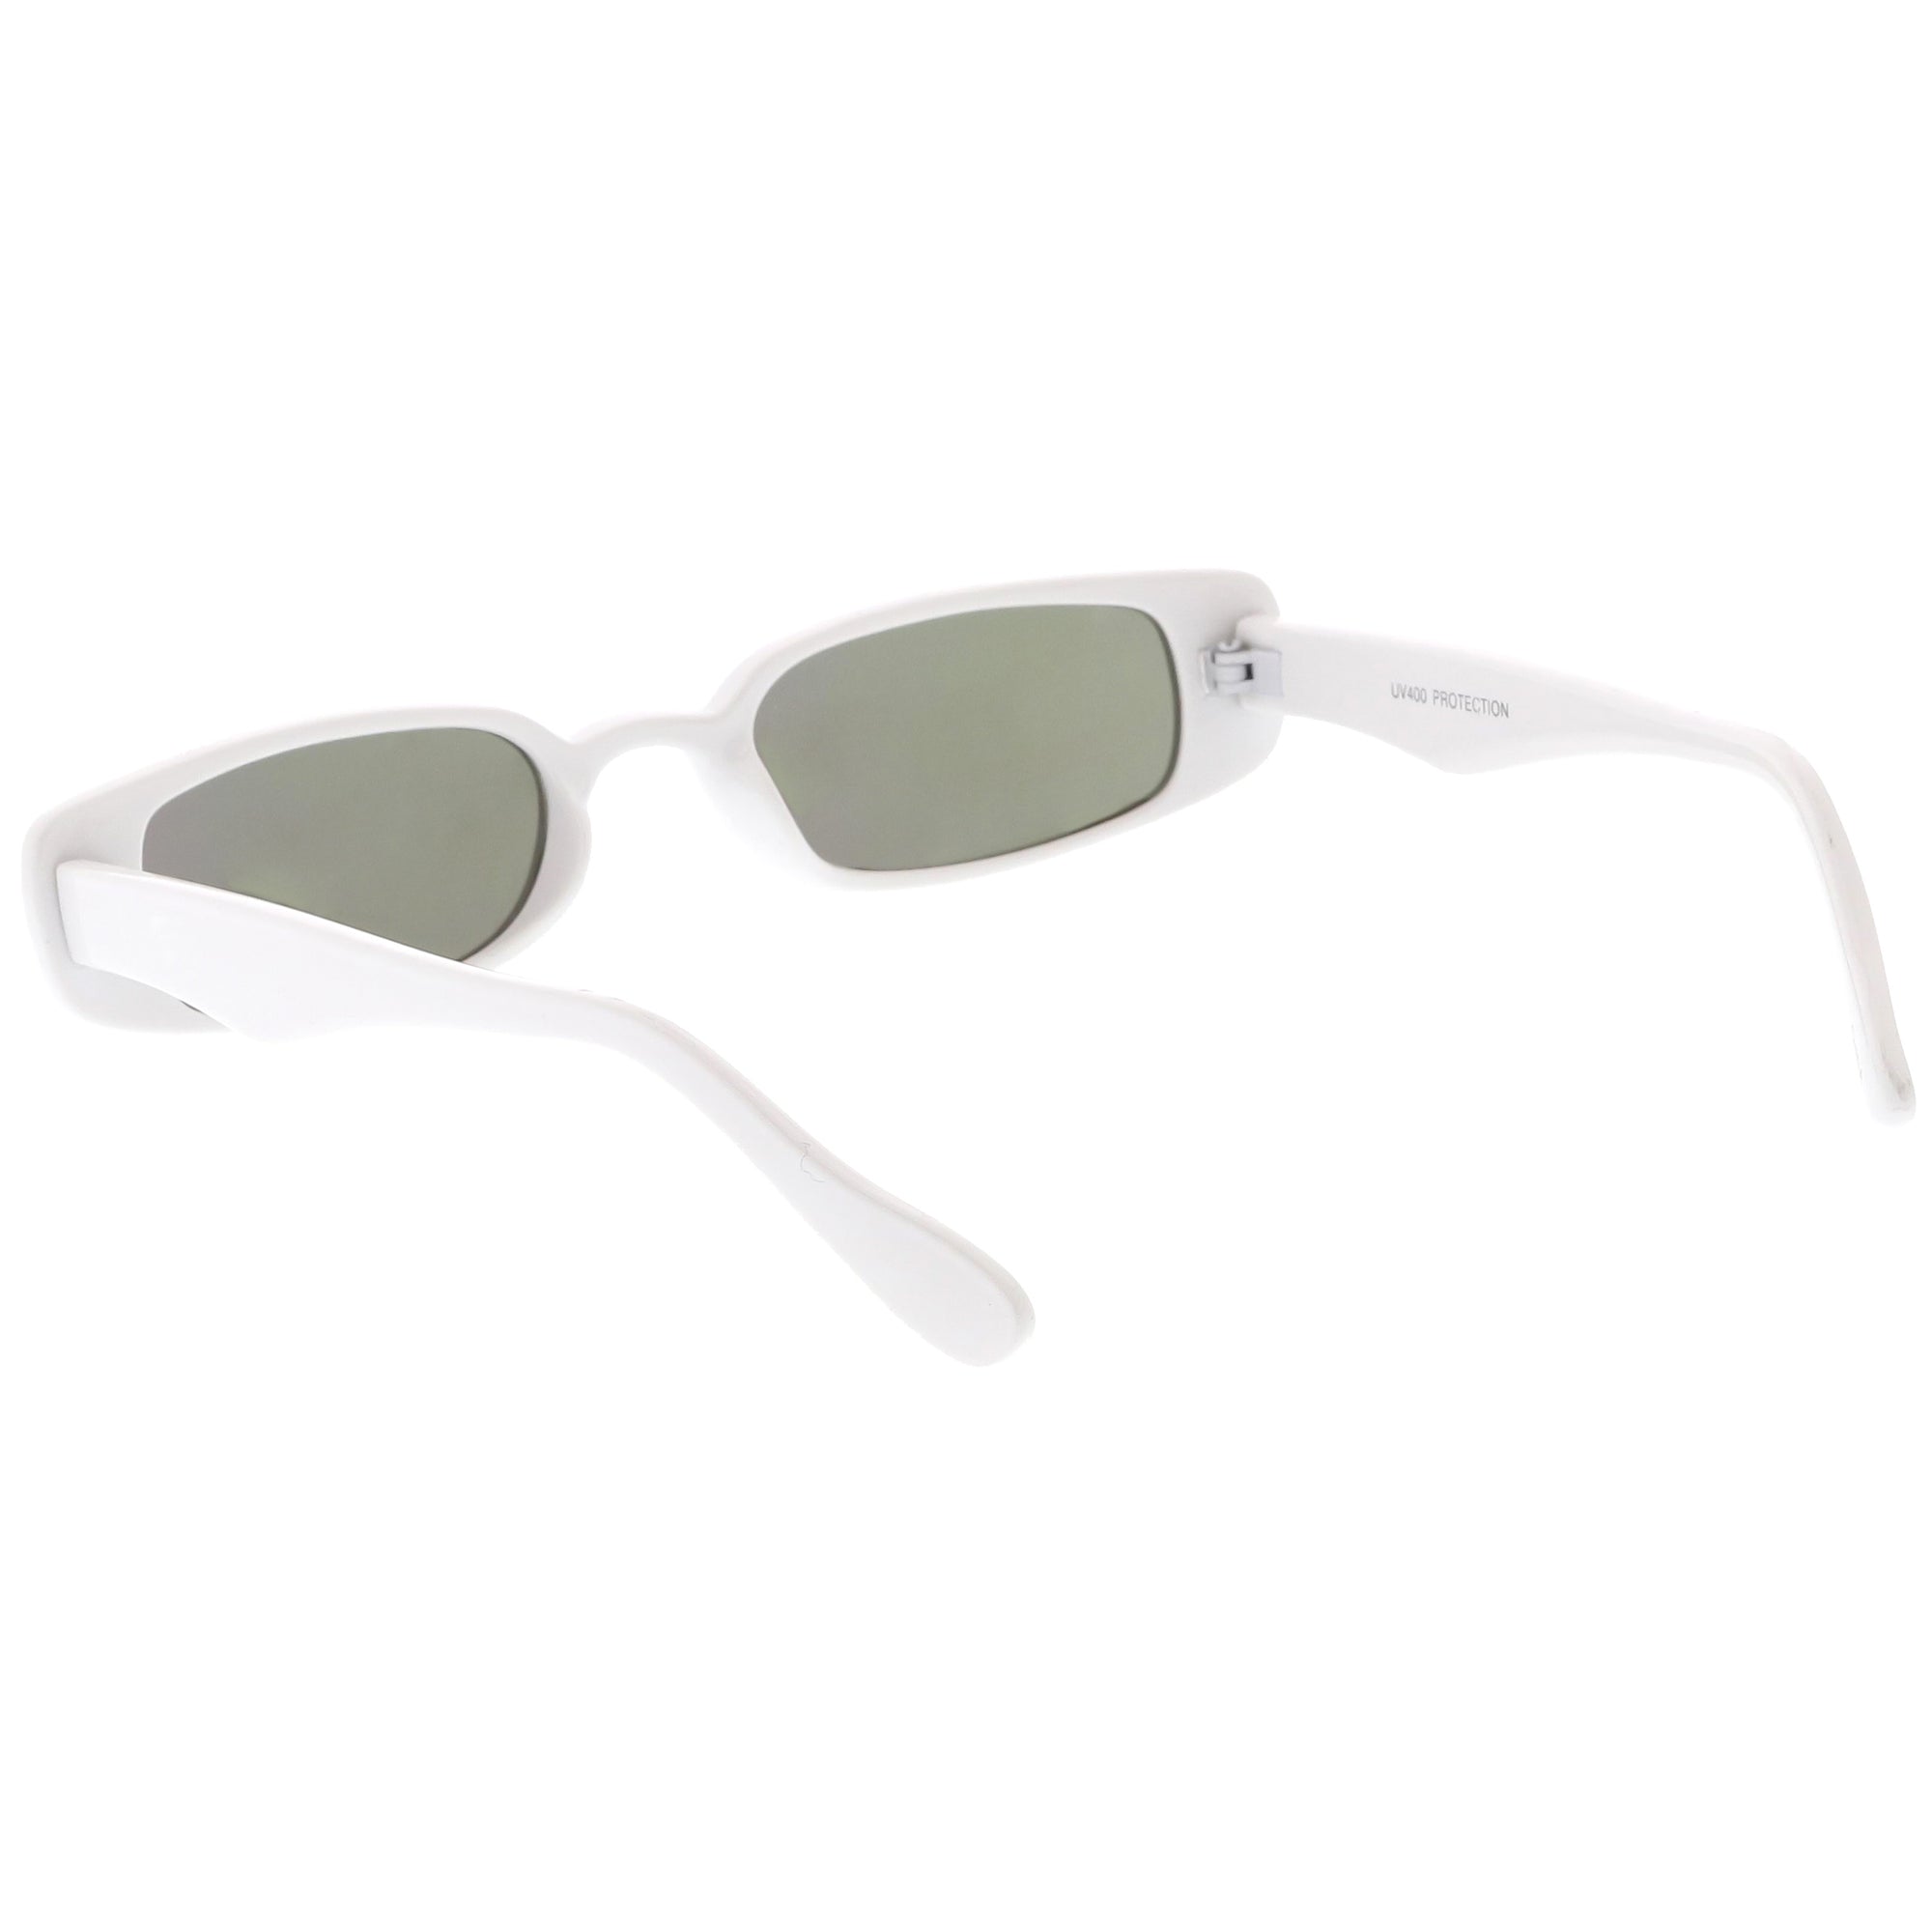 Retro 1990s Thin Rectangular Mirrored Lens Sunglasses Zerouv 